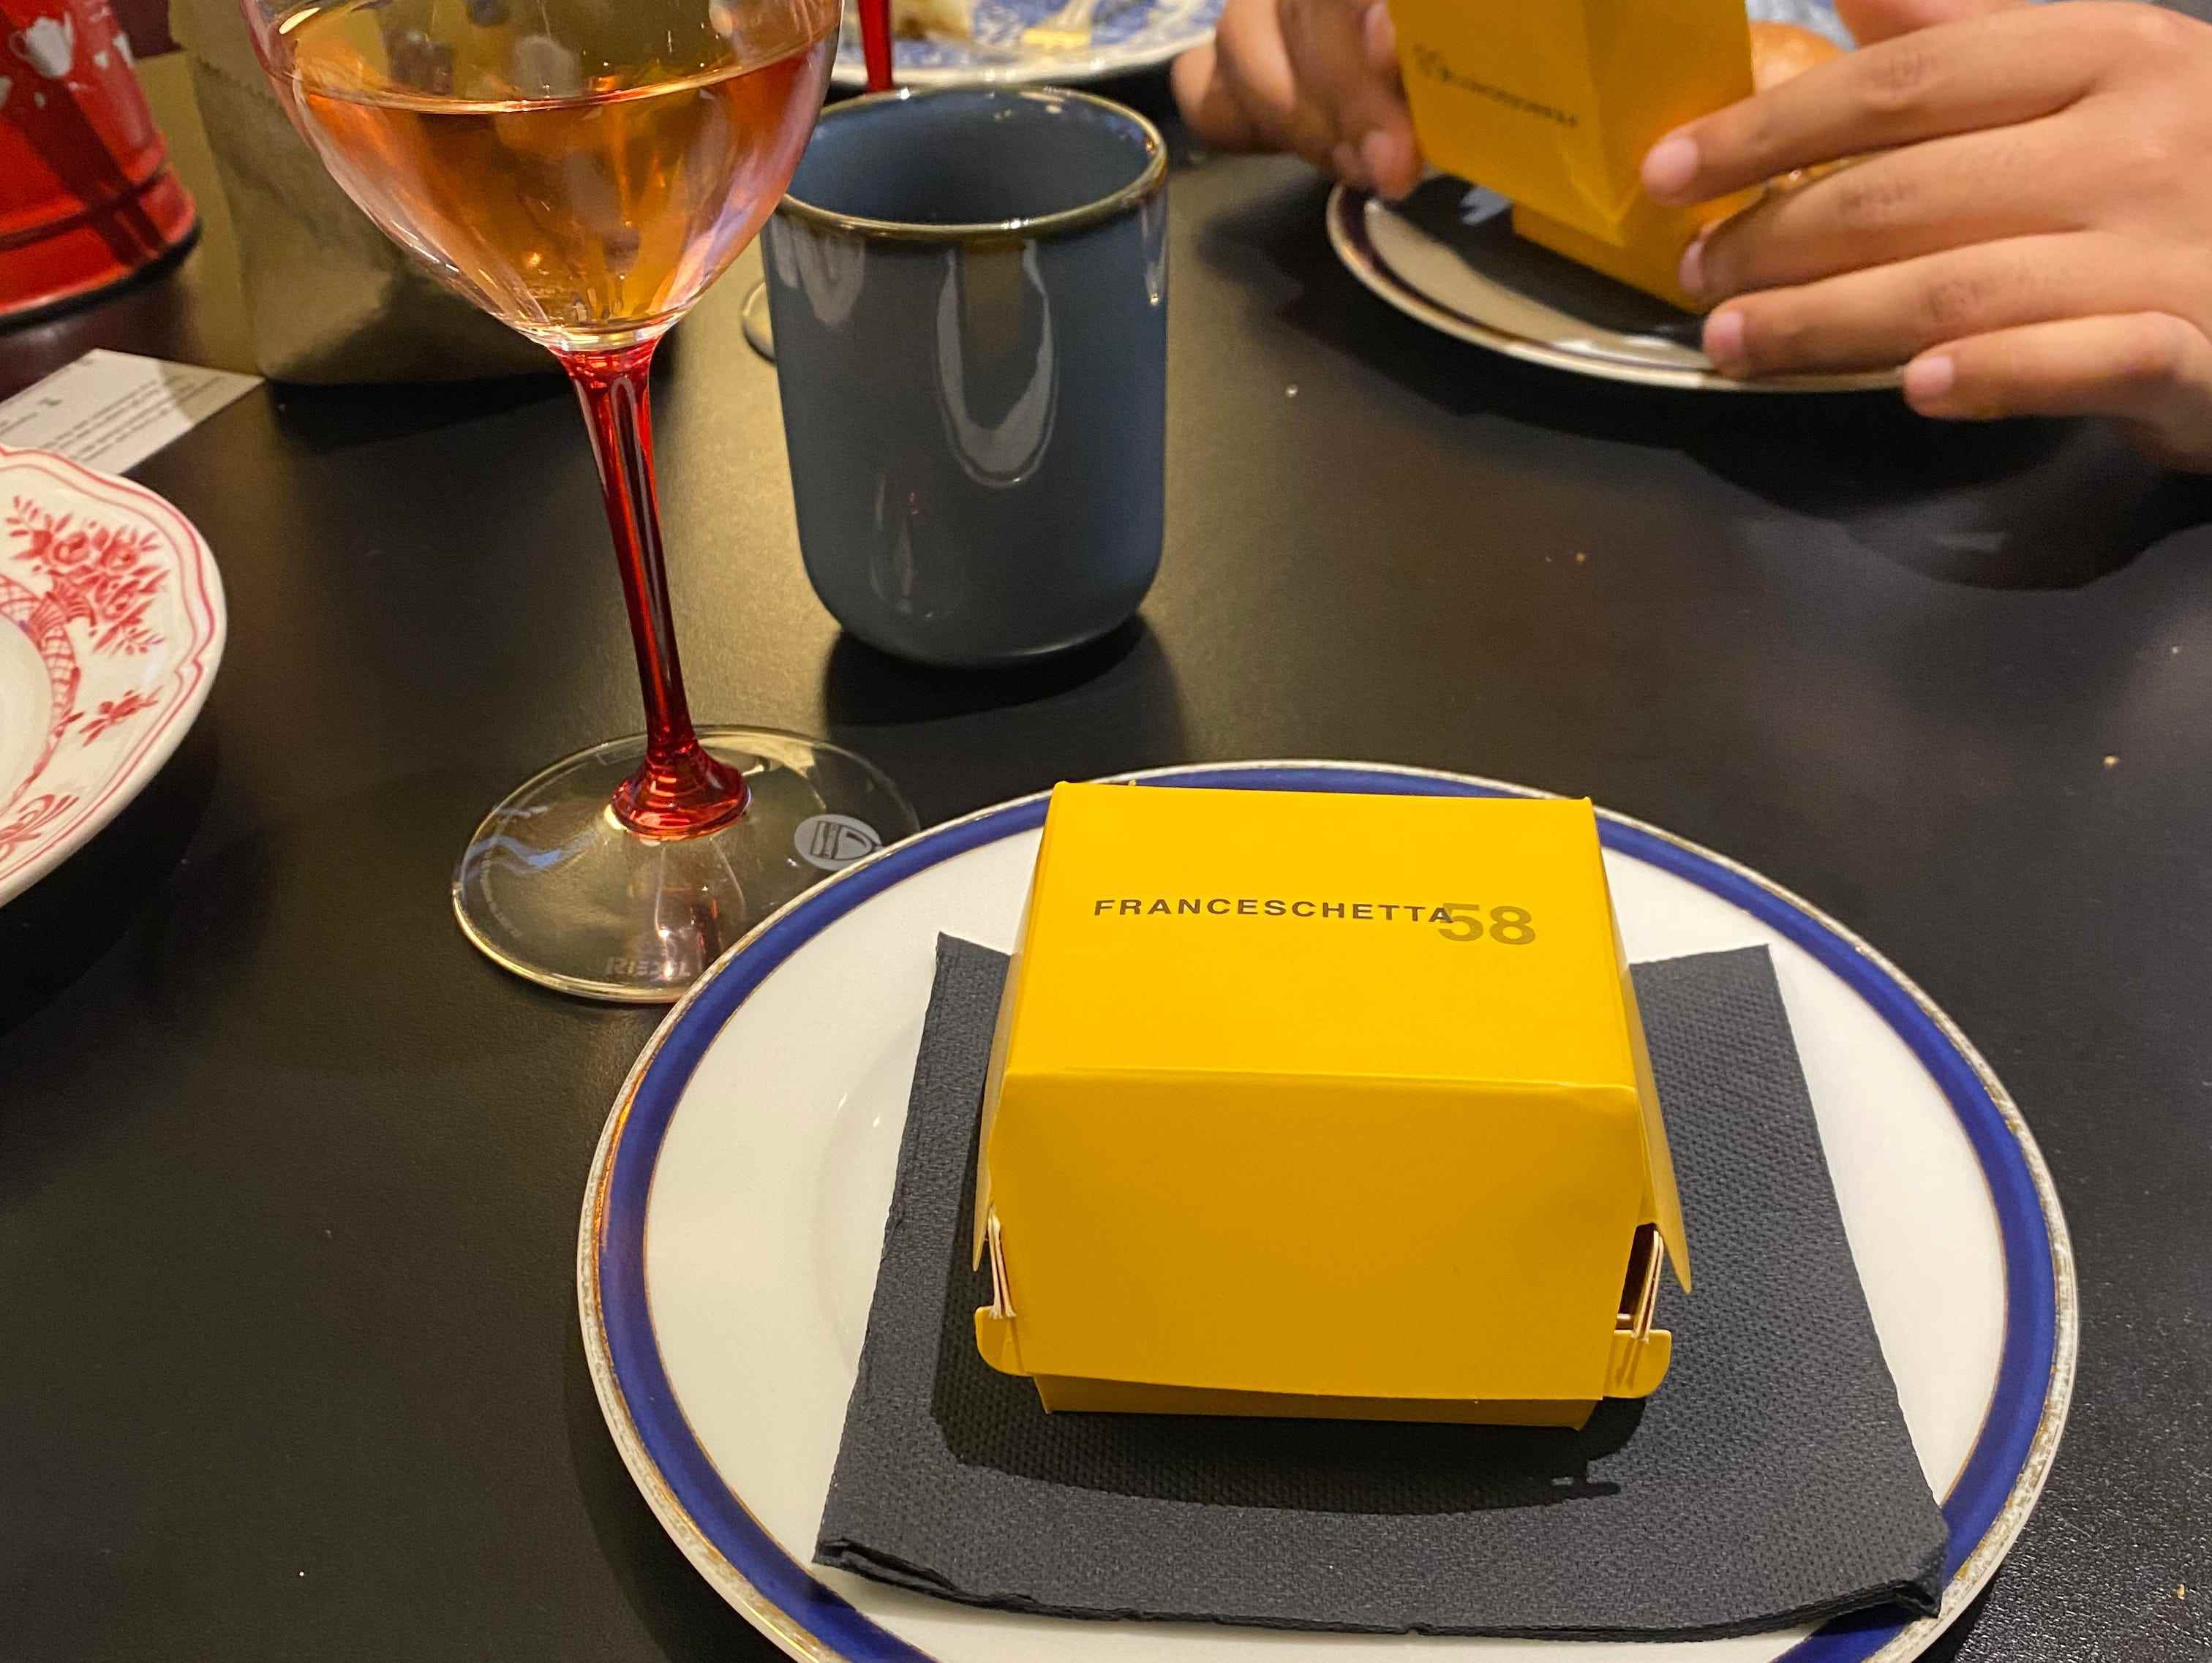 Die gelbe Burgerbox von Franceschetta58 auf einem Teller